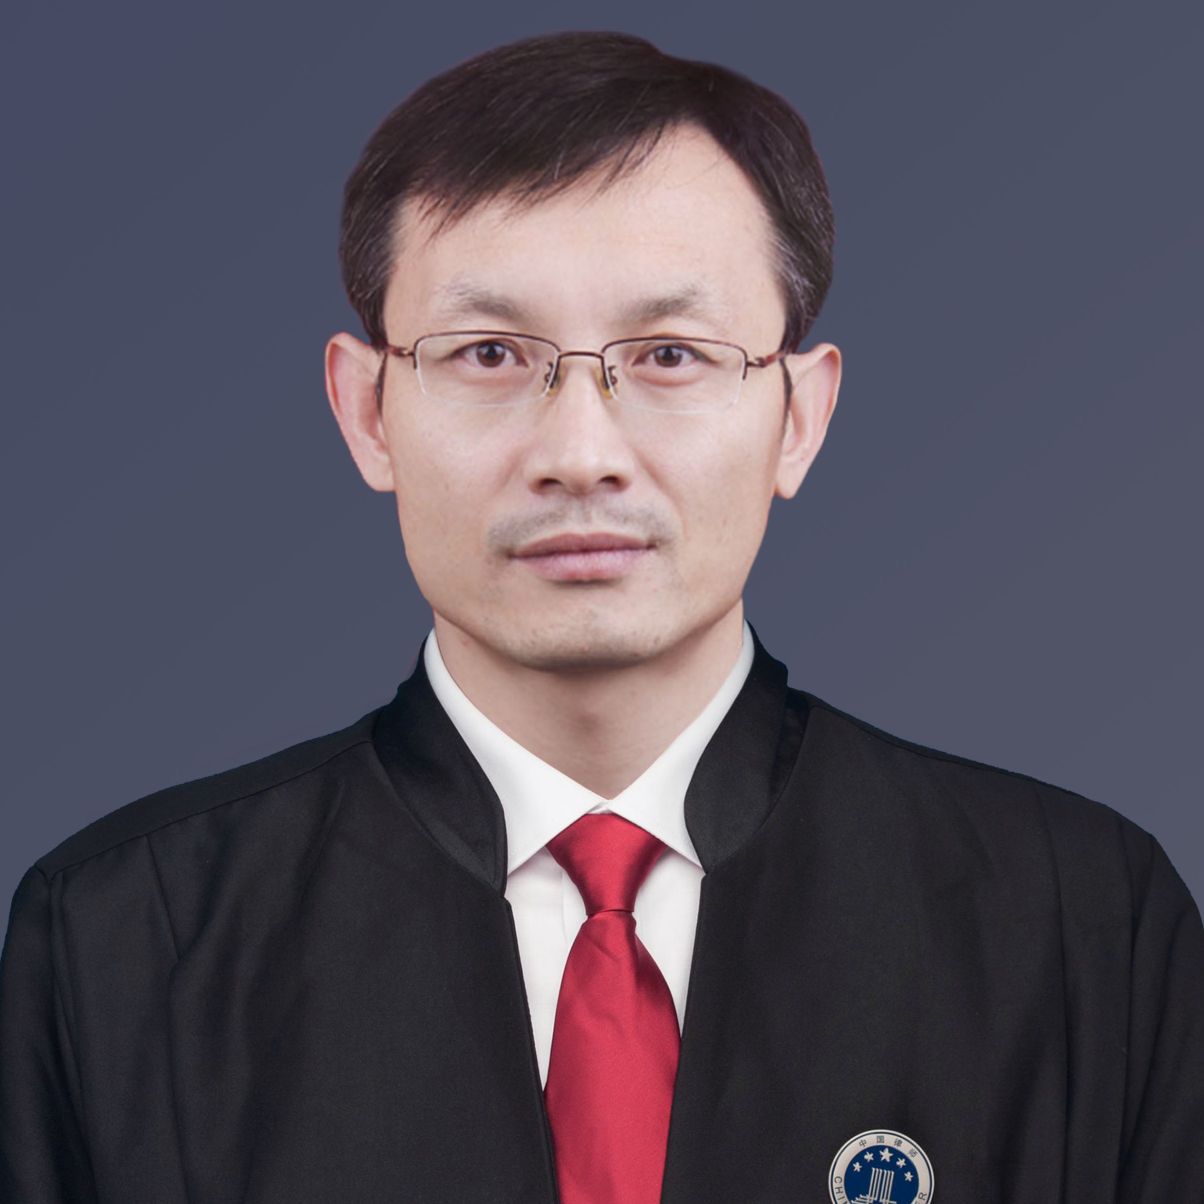 李菊强律师